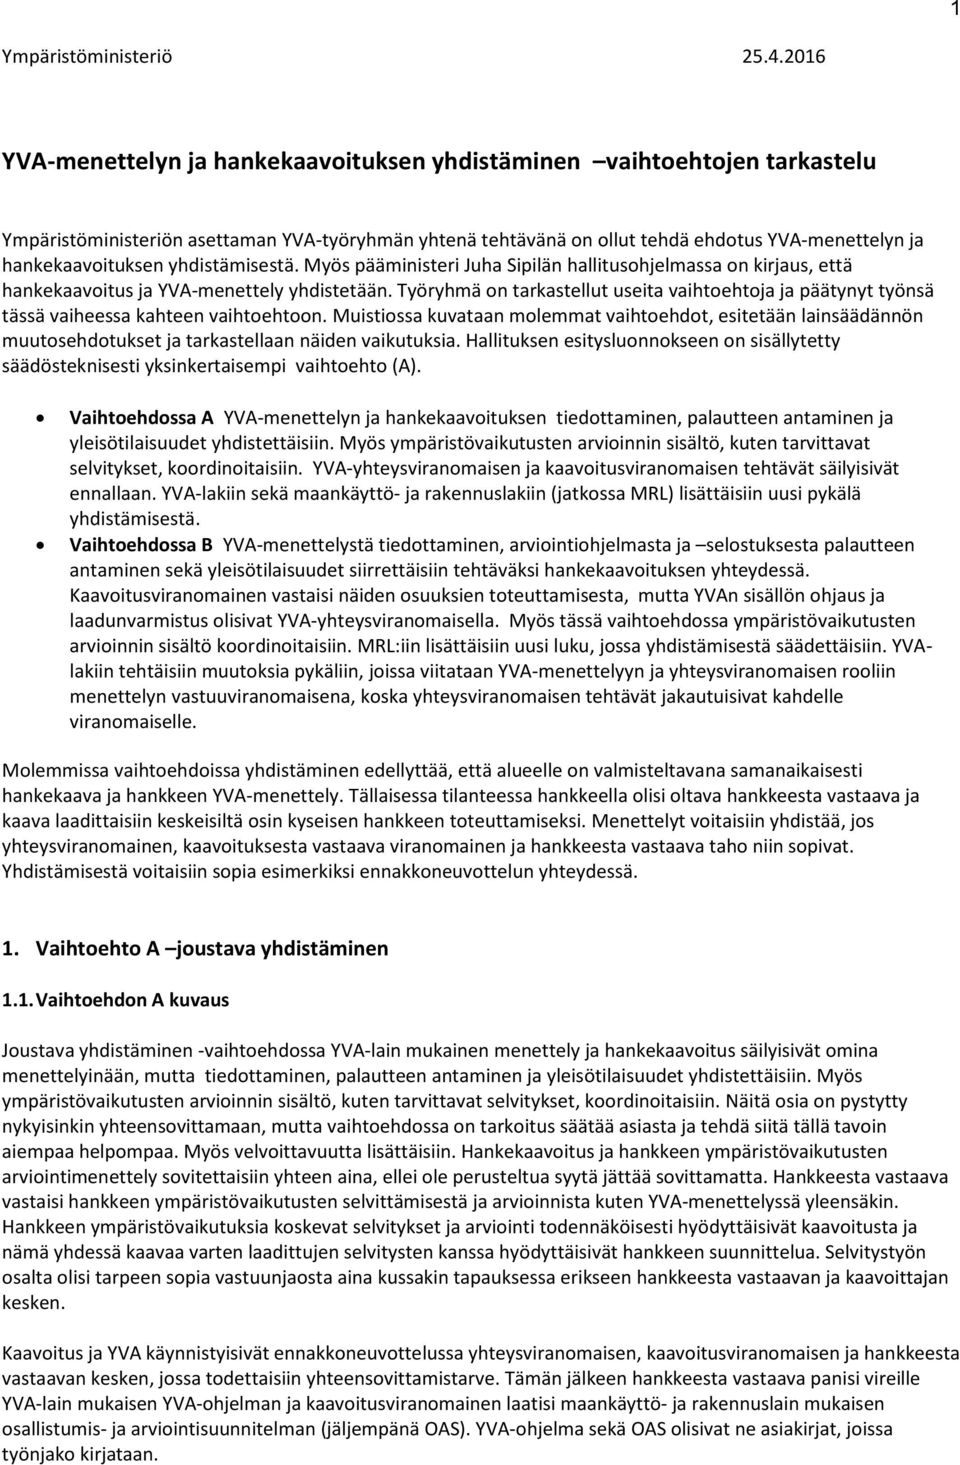 yhdistämisestä. Myös pääministeri Juha Sipilän hallitusohjelmassa on kirjaus, että hankekaavoitus ja YVA-menettely yhdistetään.